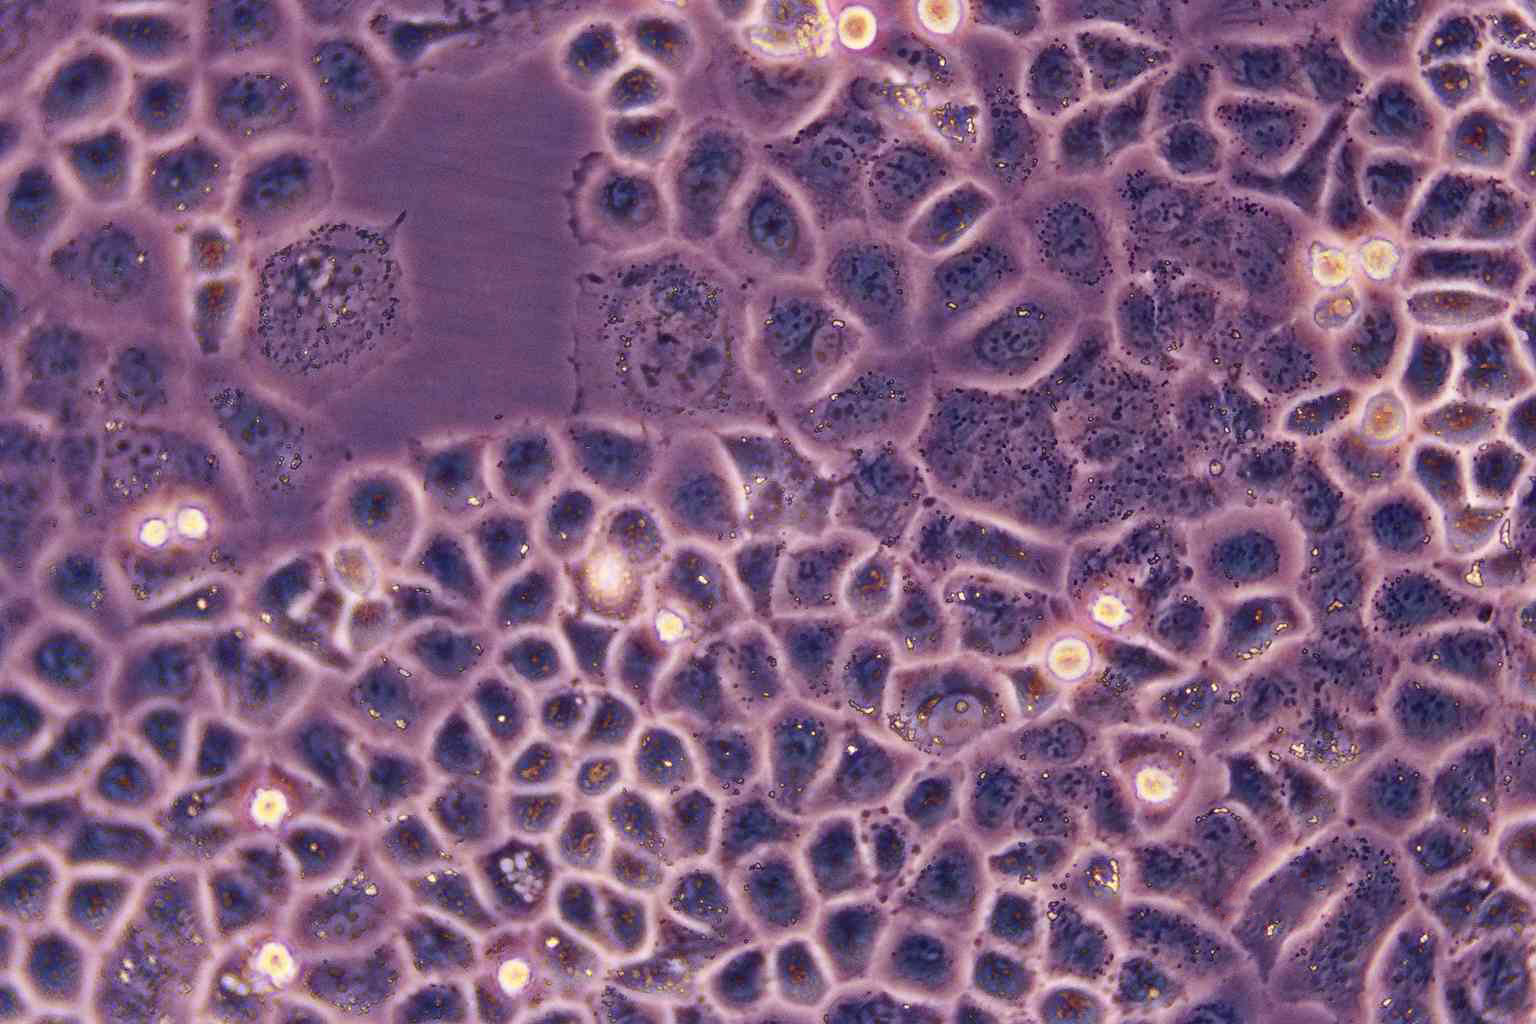 SaOS-2 epithelioid cells人成骨肉瘤细胞系,SaOS-2 epithelioid cells